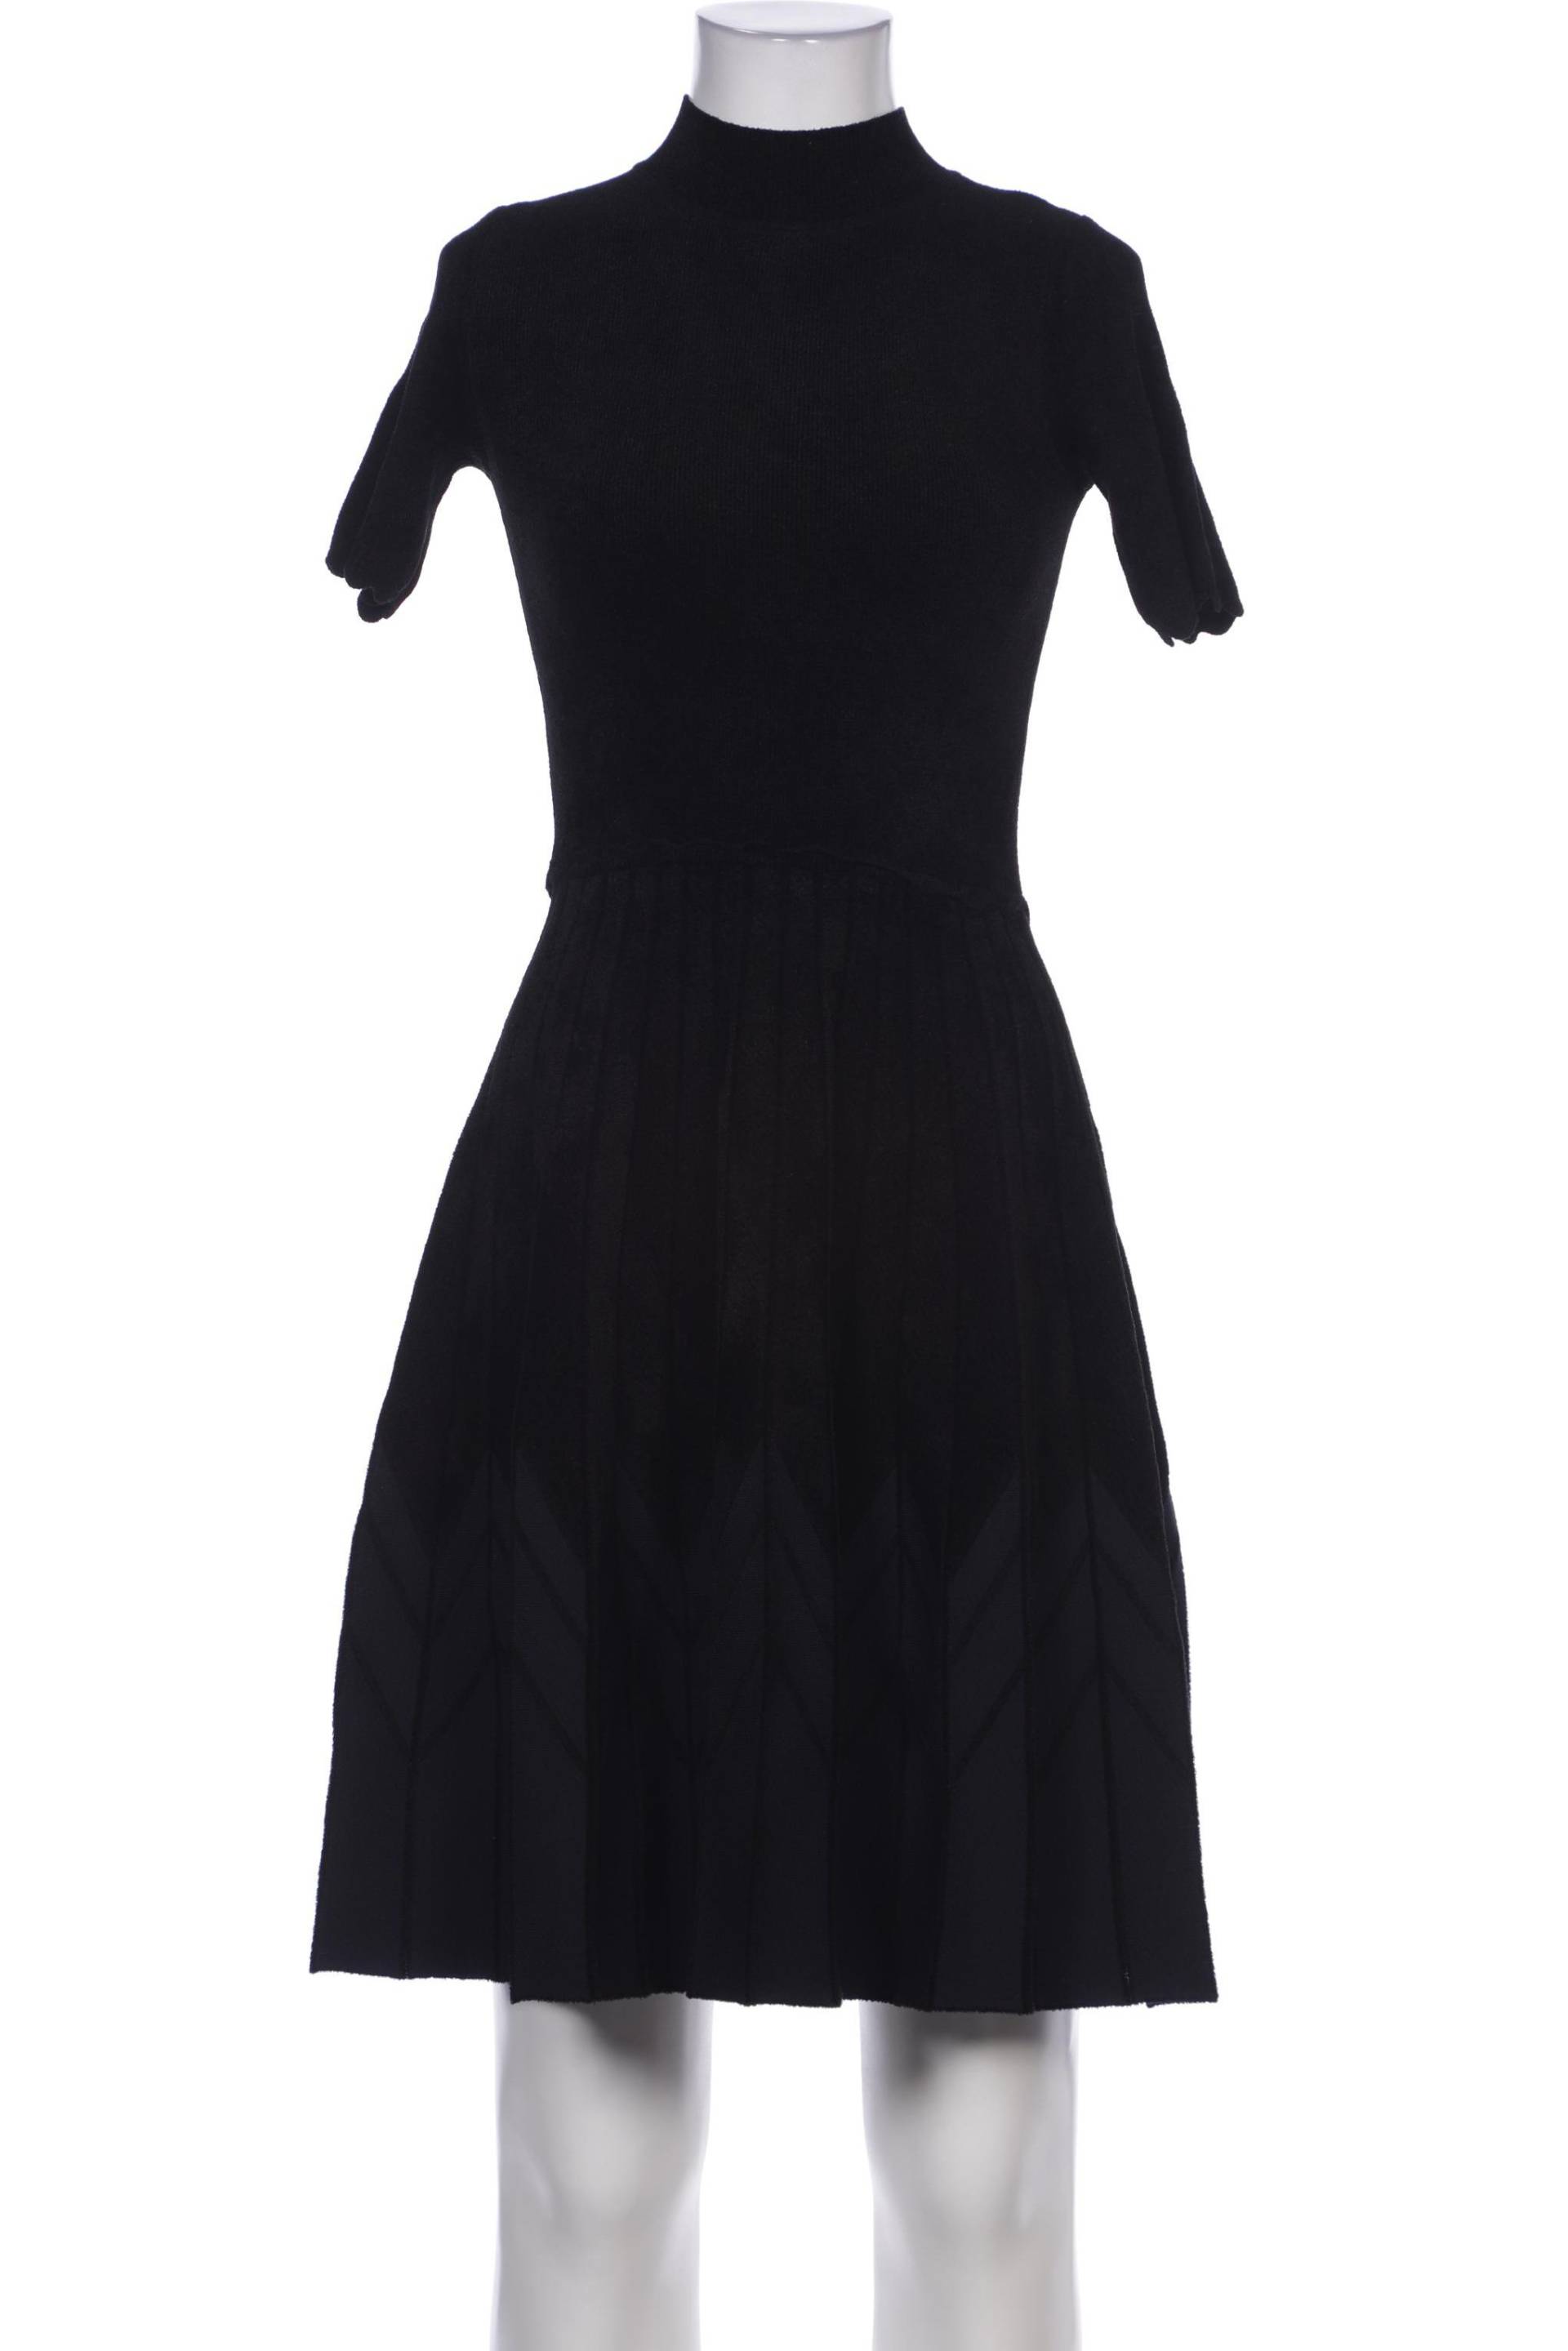 Sandro Damen Kleid, schwarz, Gr. 36 von sandro